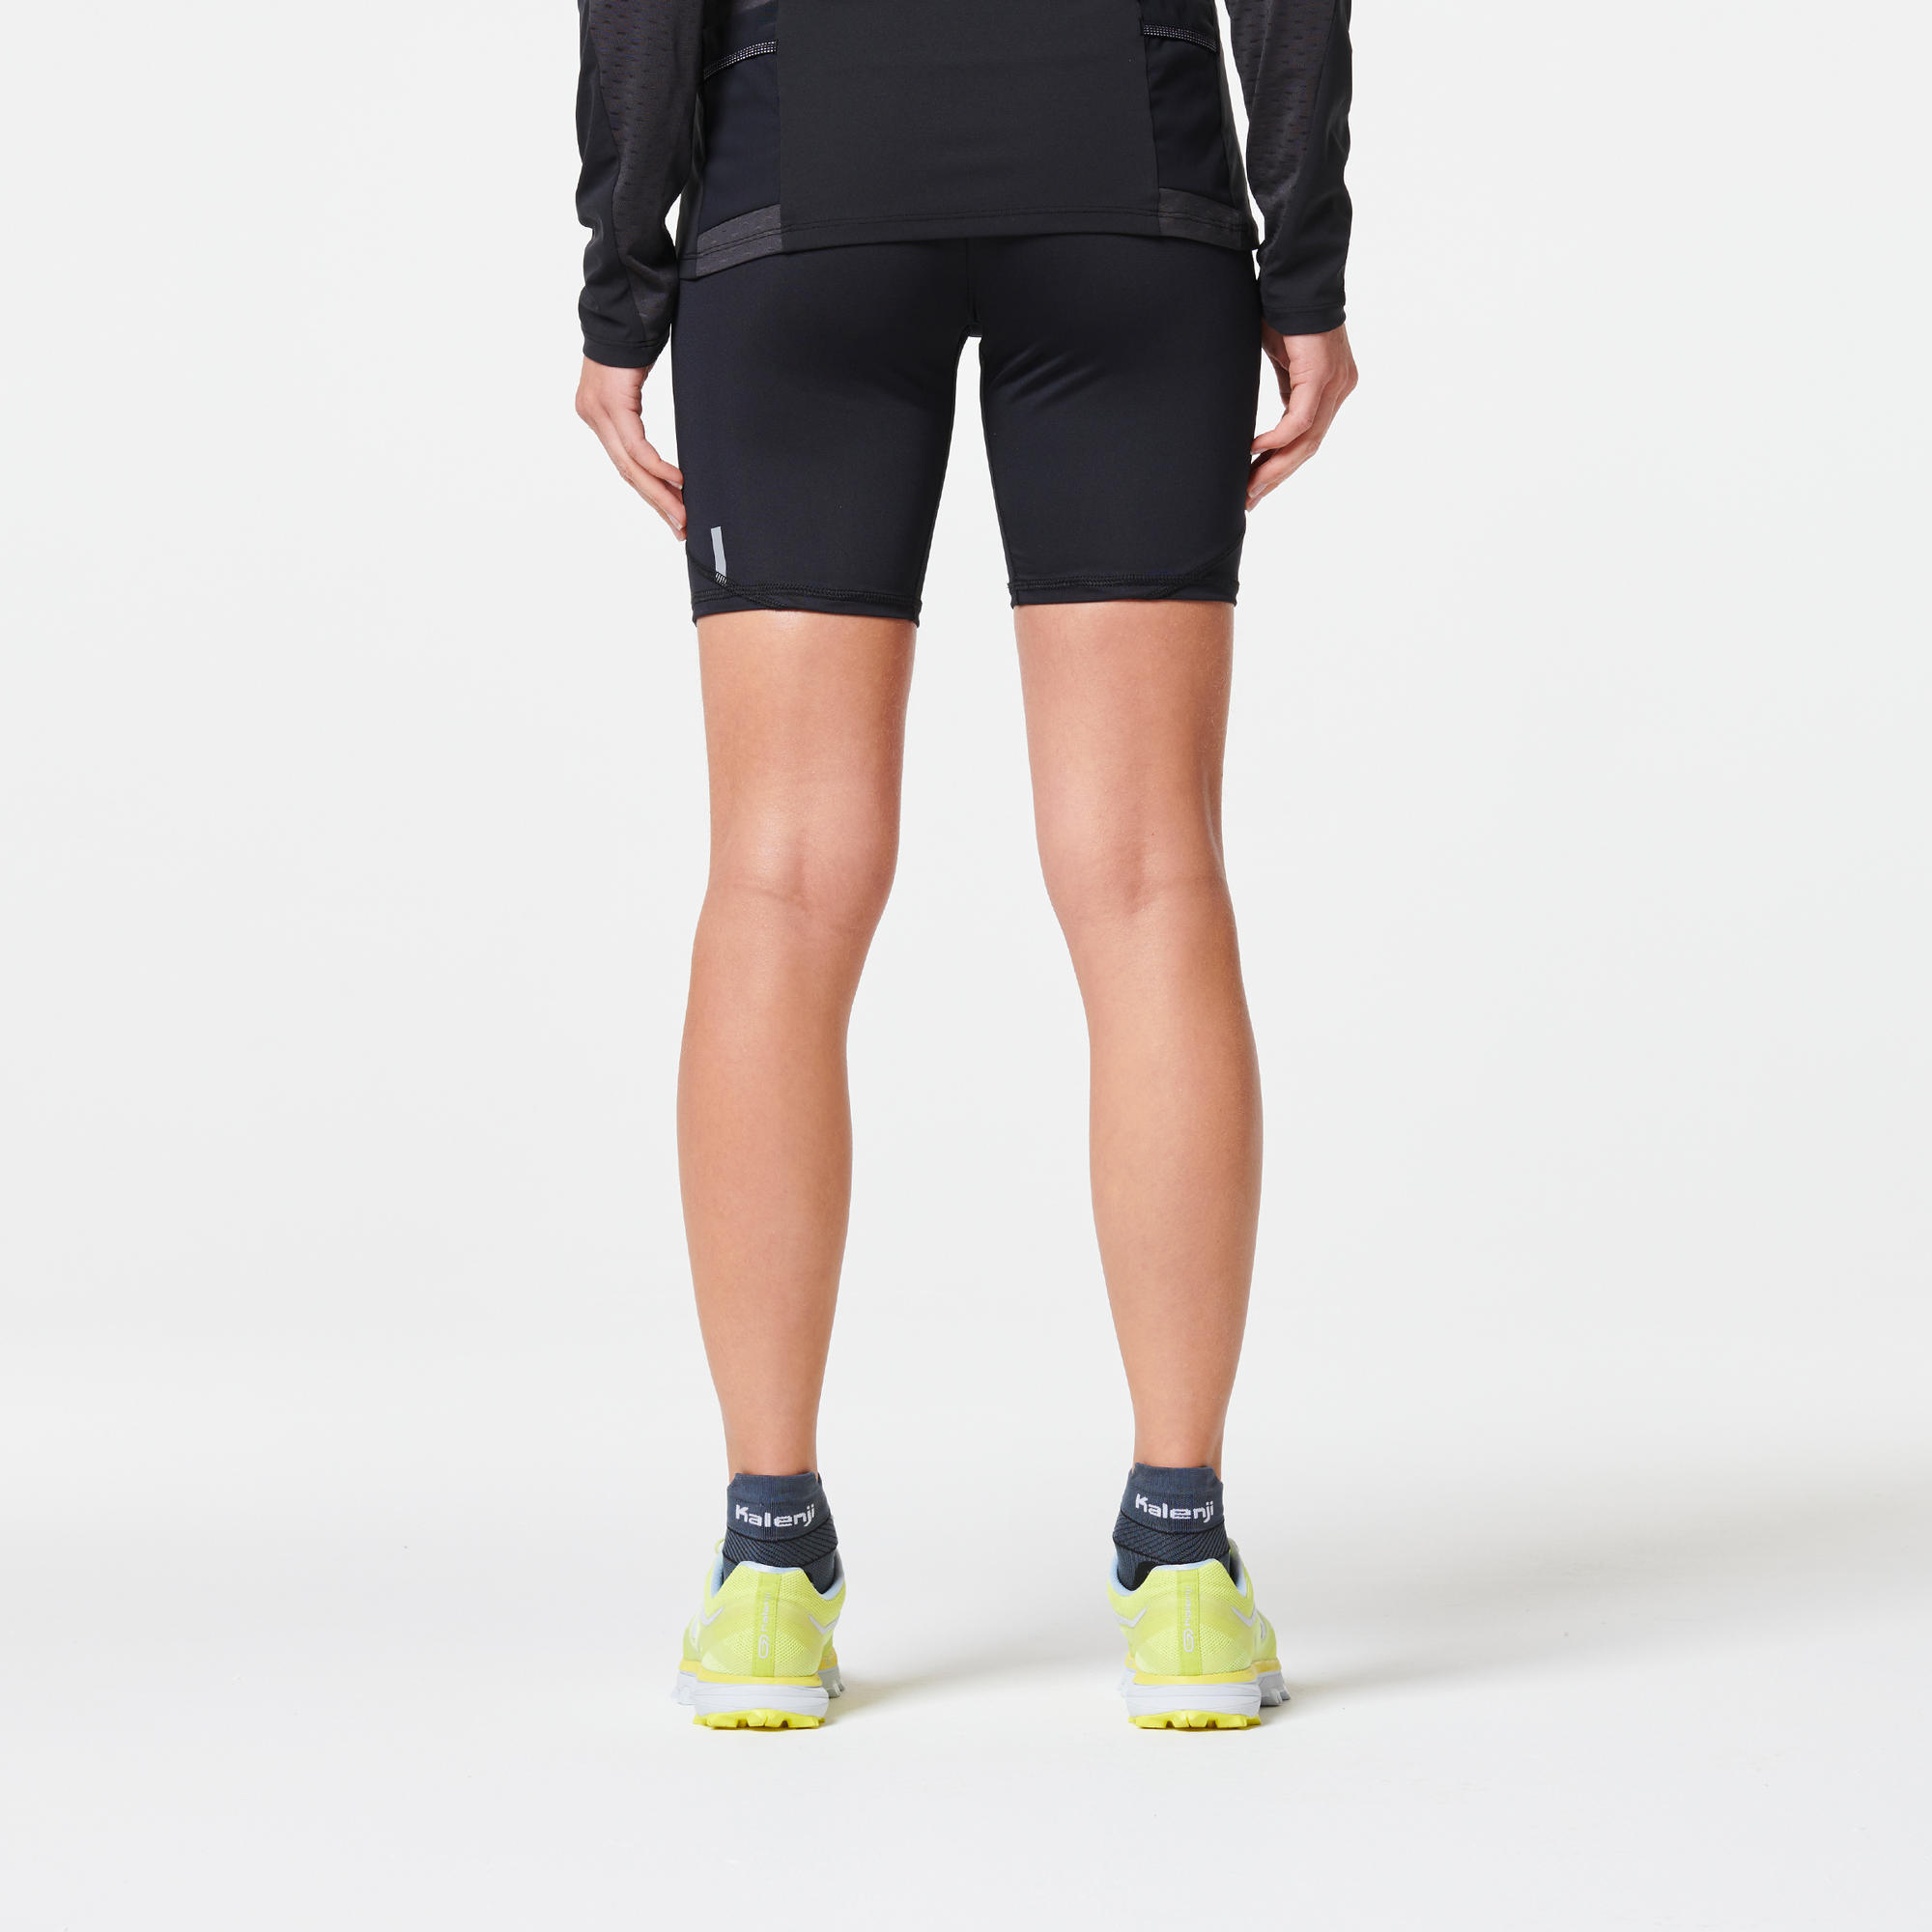 black tight running shorts